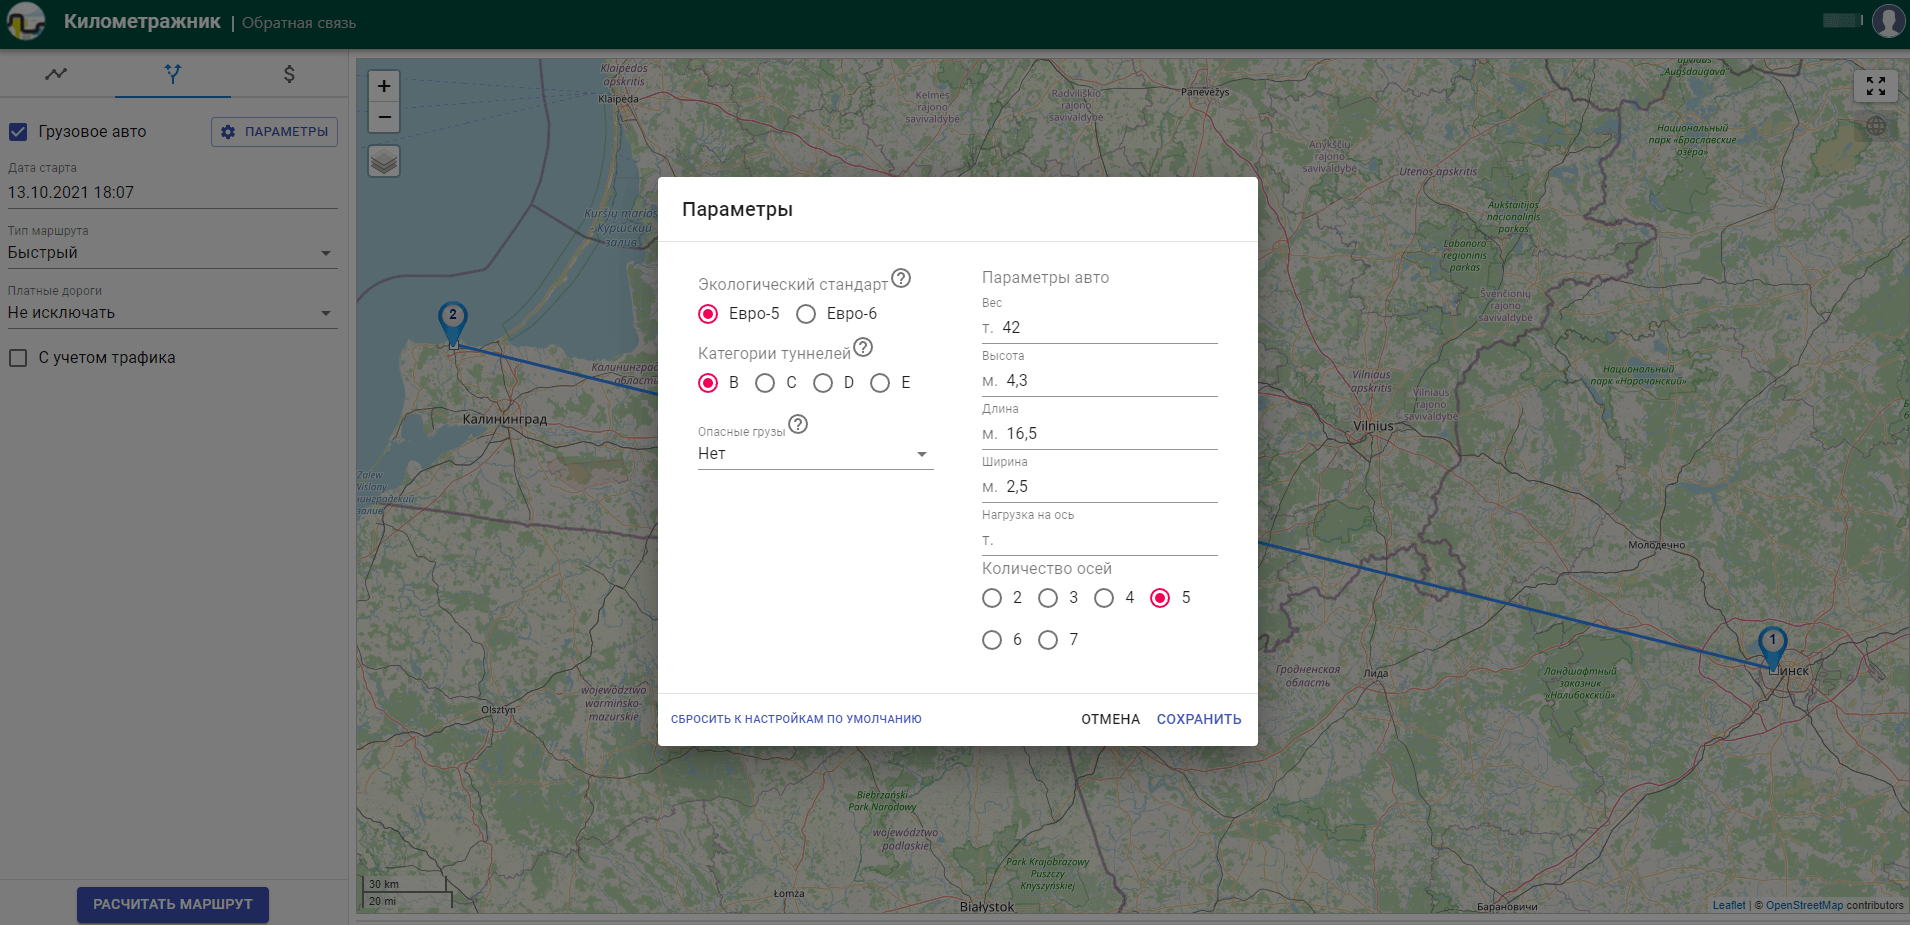 Упрощенный интерфейс для планирования маршрутов